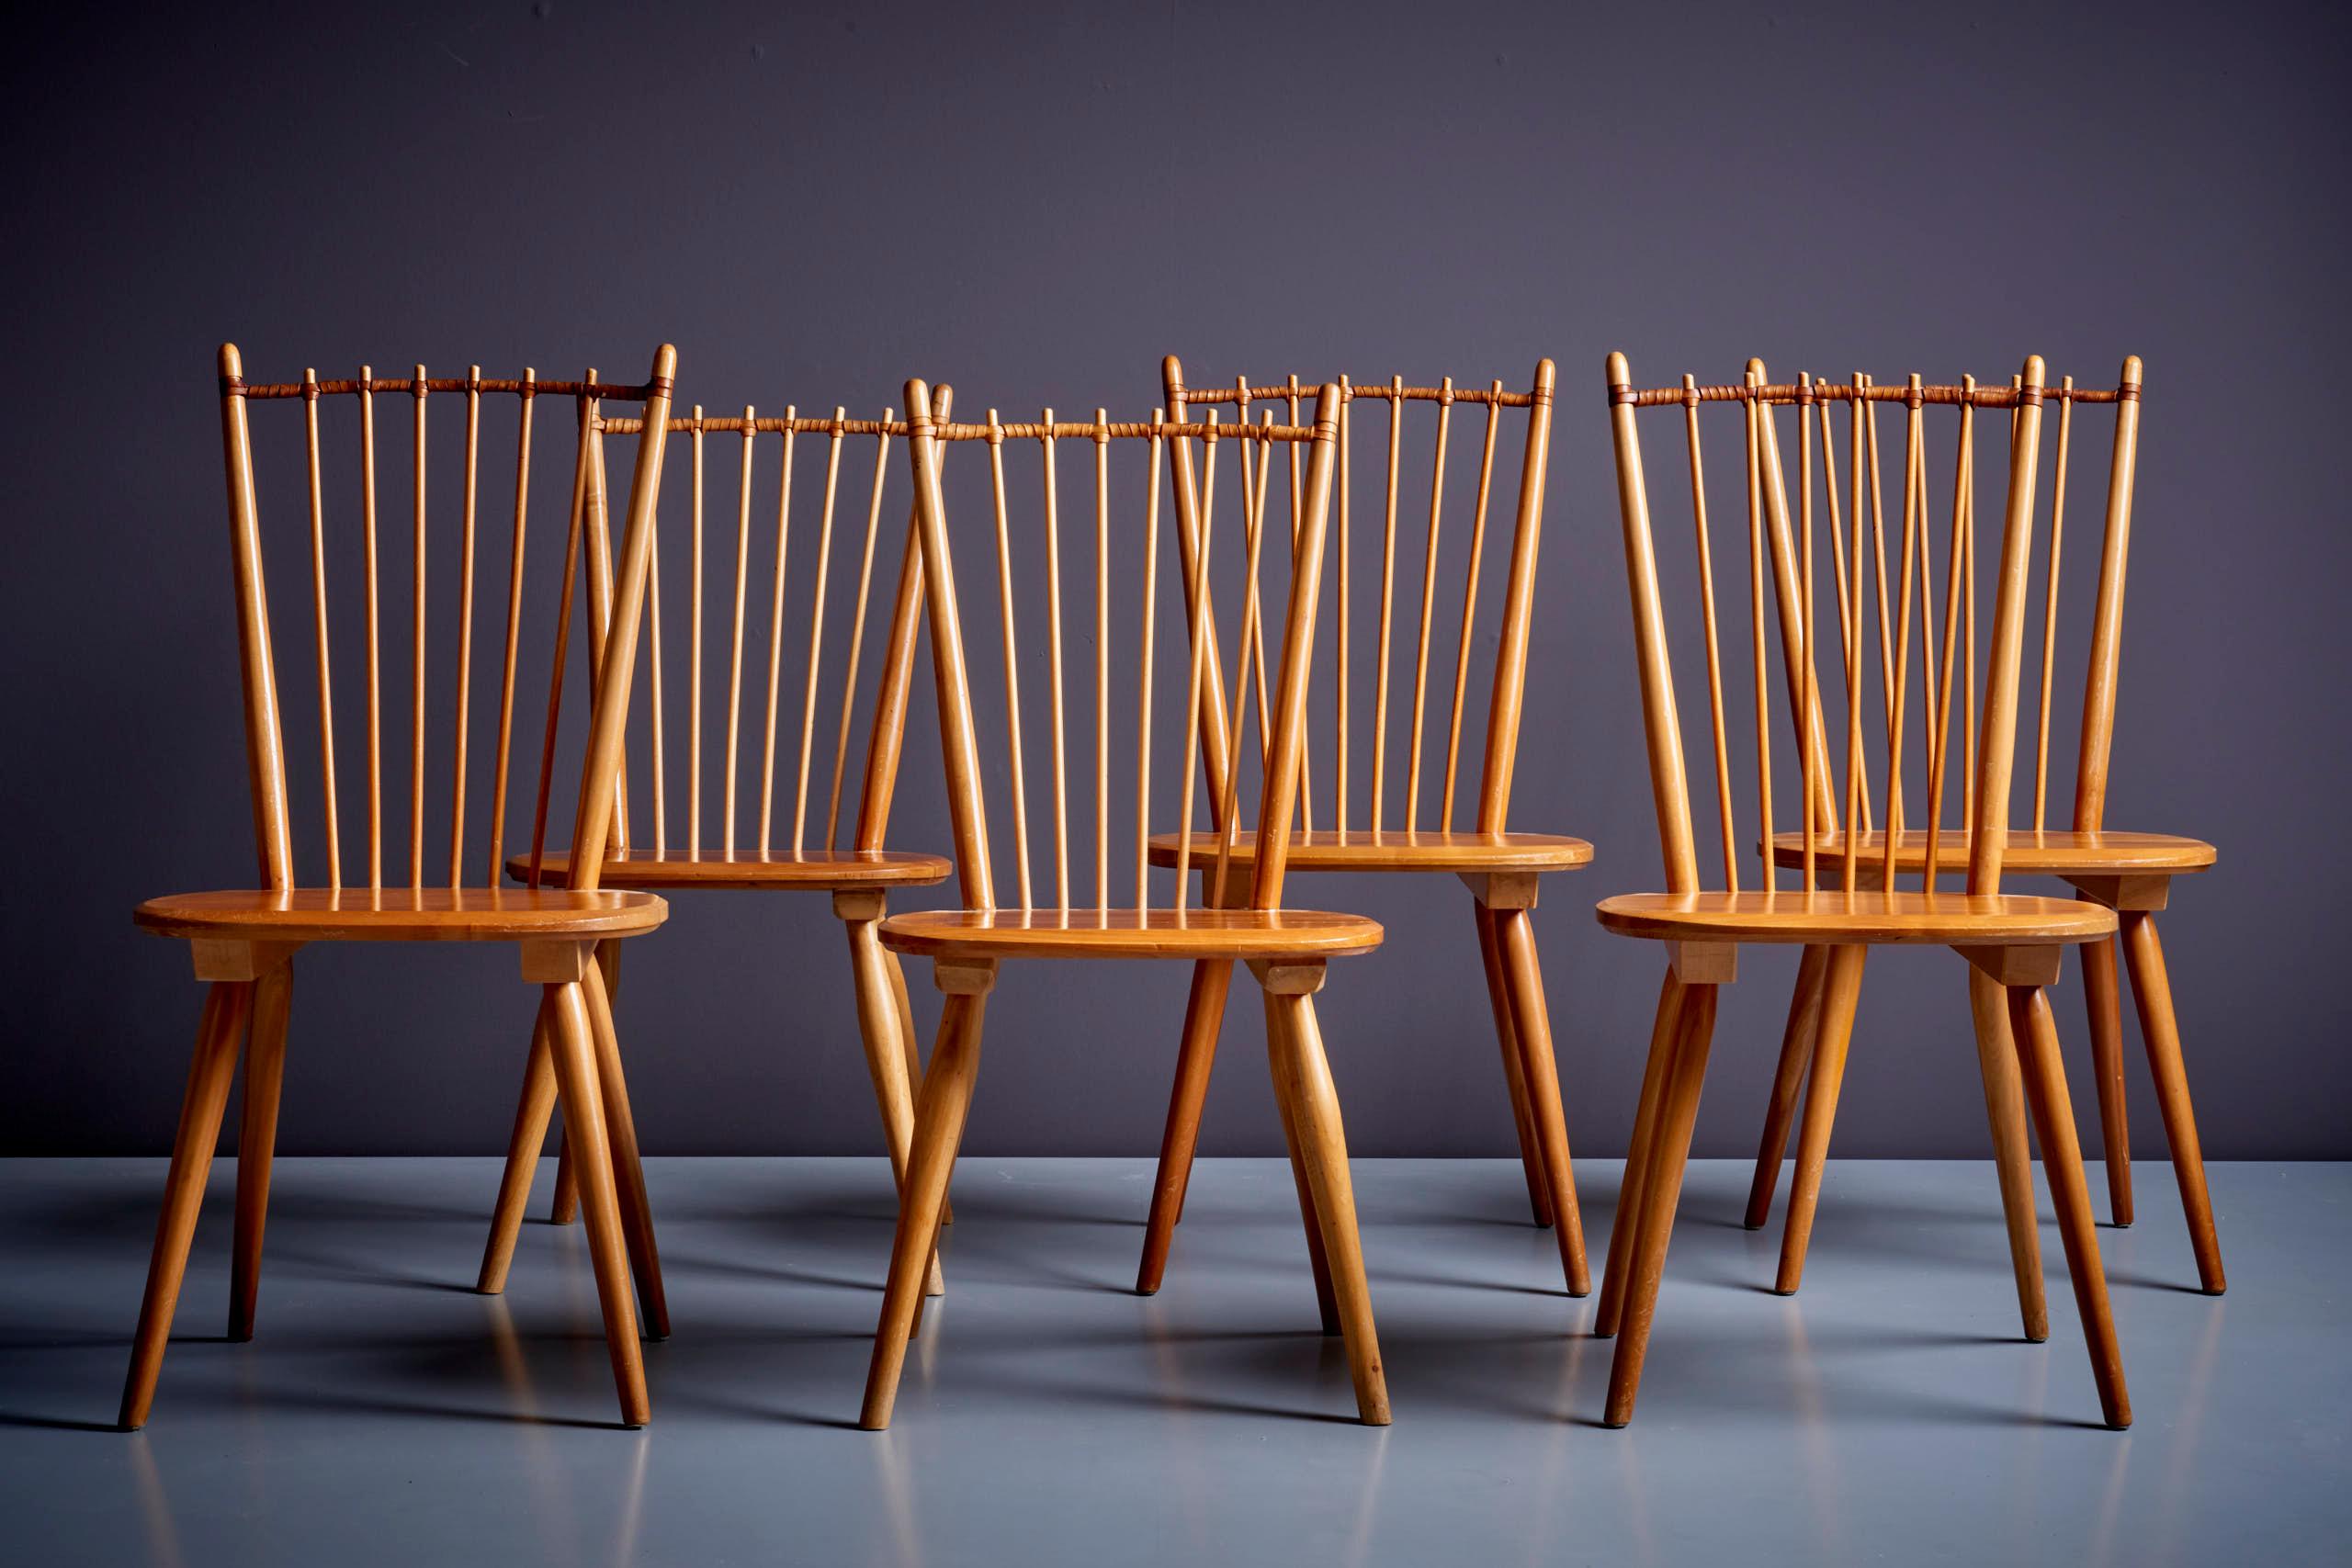 Ensemble de 6 chaises de salle à manger en bois, conçues dans les années 1950 par Albert Haberer et fabriquées par Hermann Fleiner.
Un beau détail est la liaison en cuir entre les broches qui confère au dossier à la fois force et souplesse.